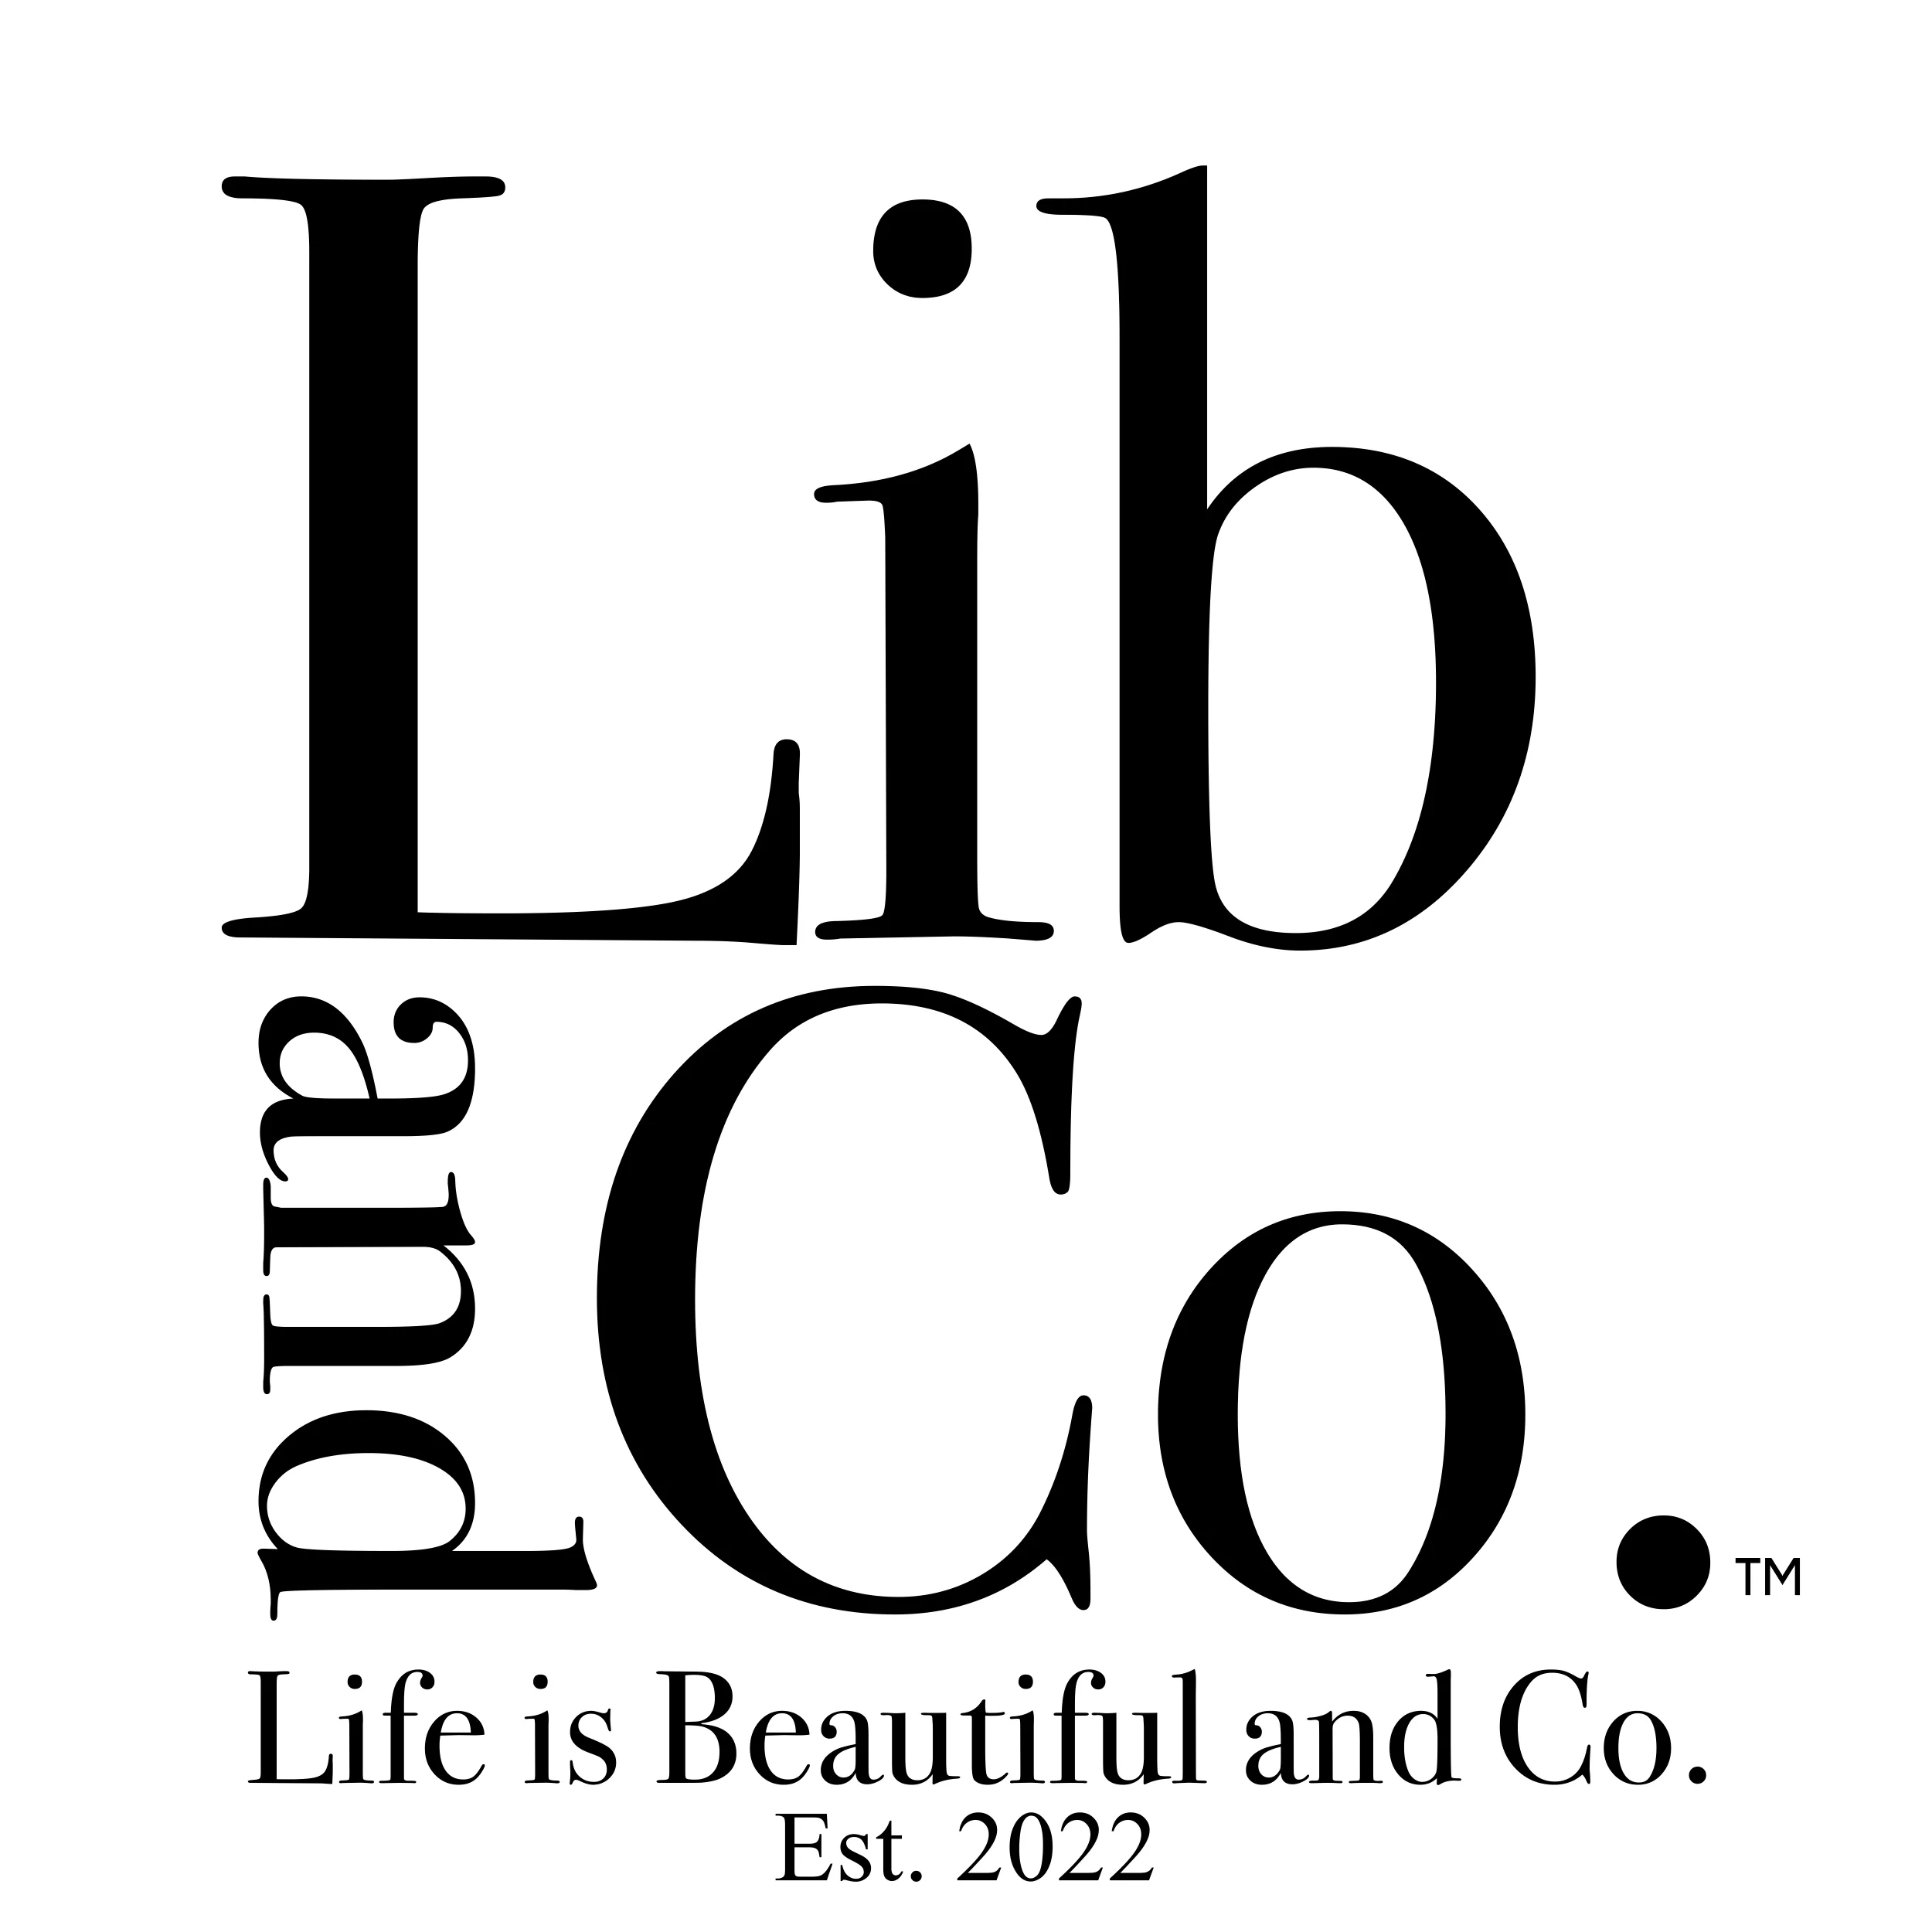 LIB & CO. in 